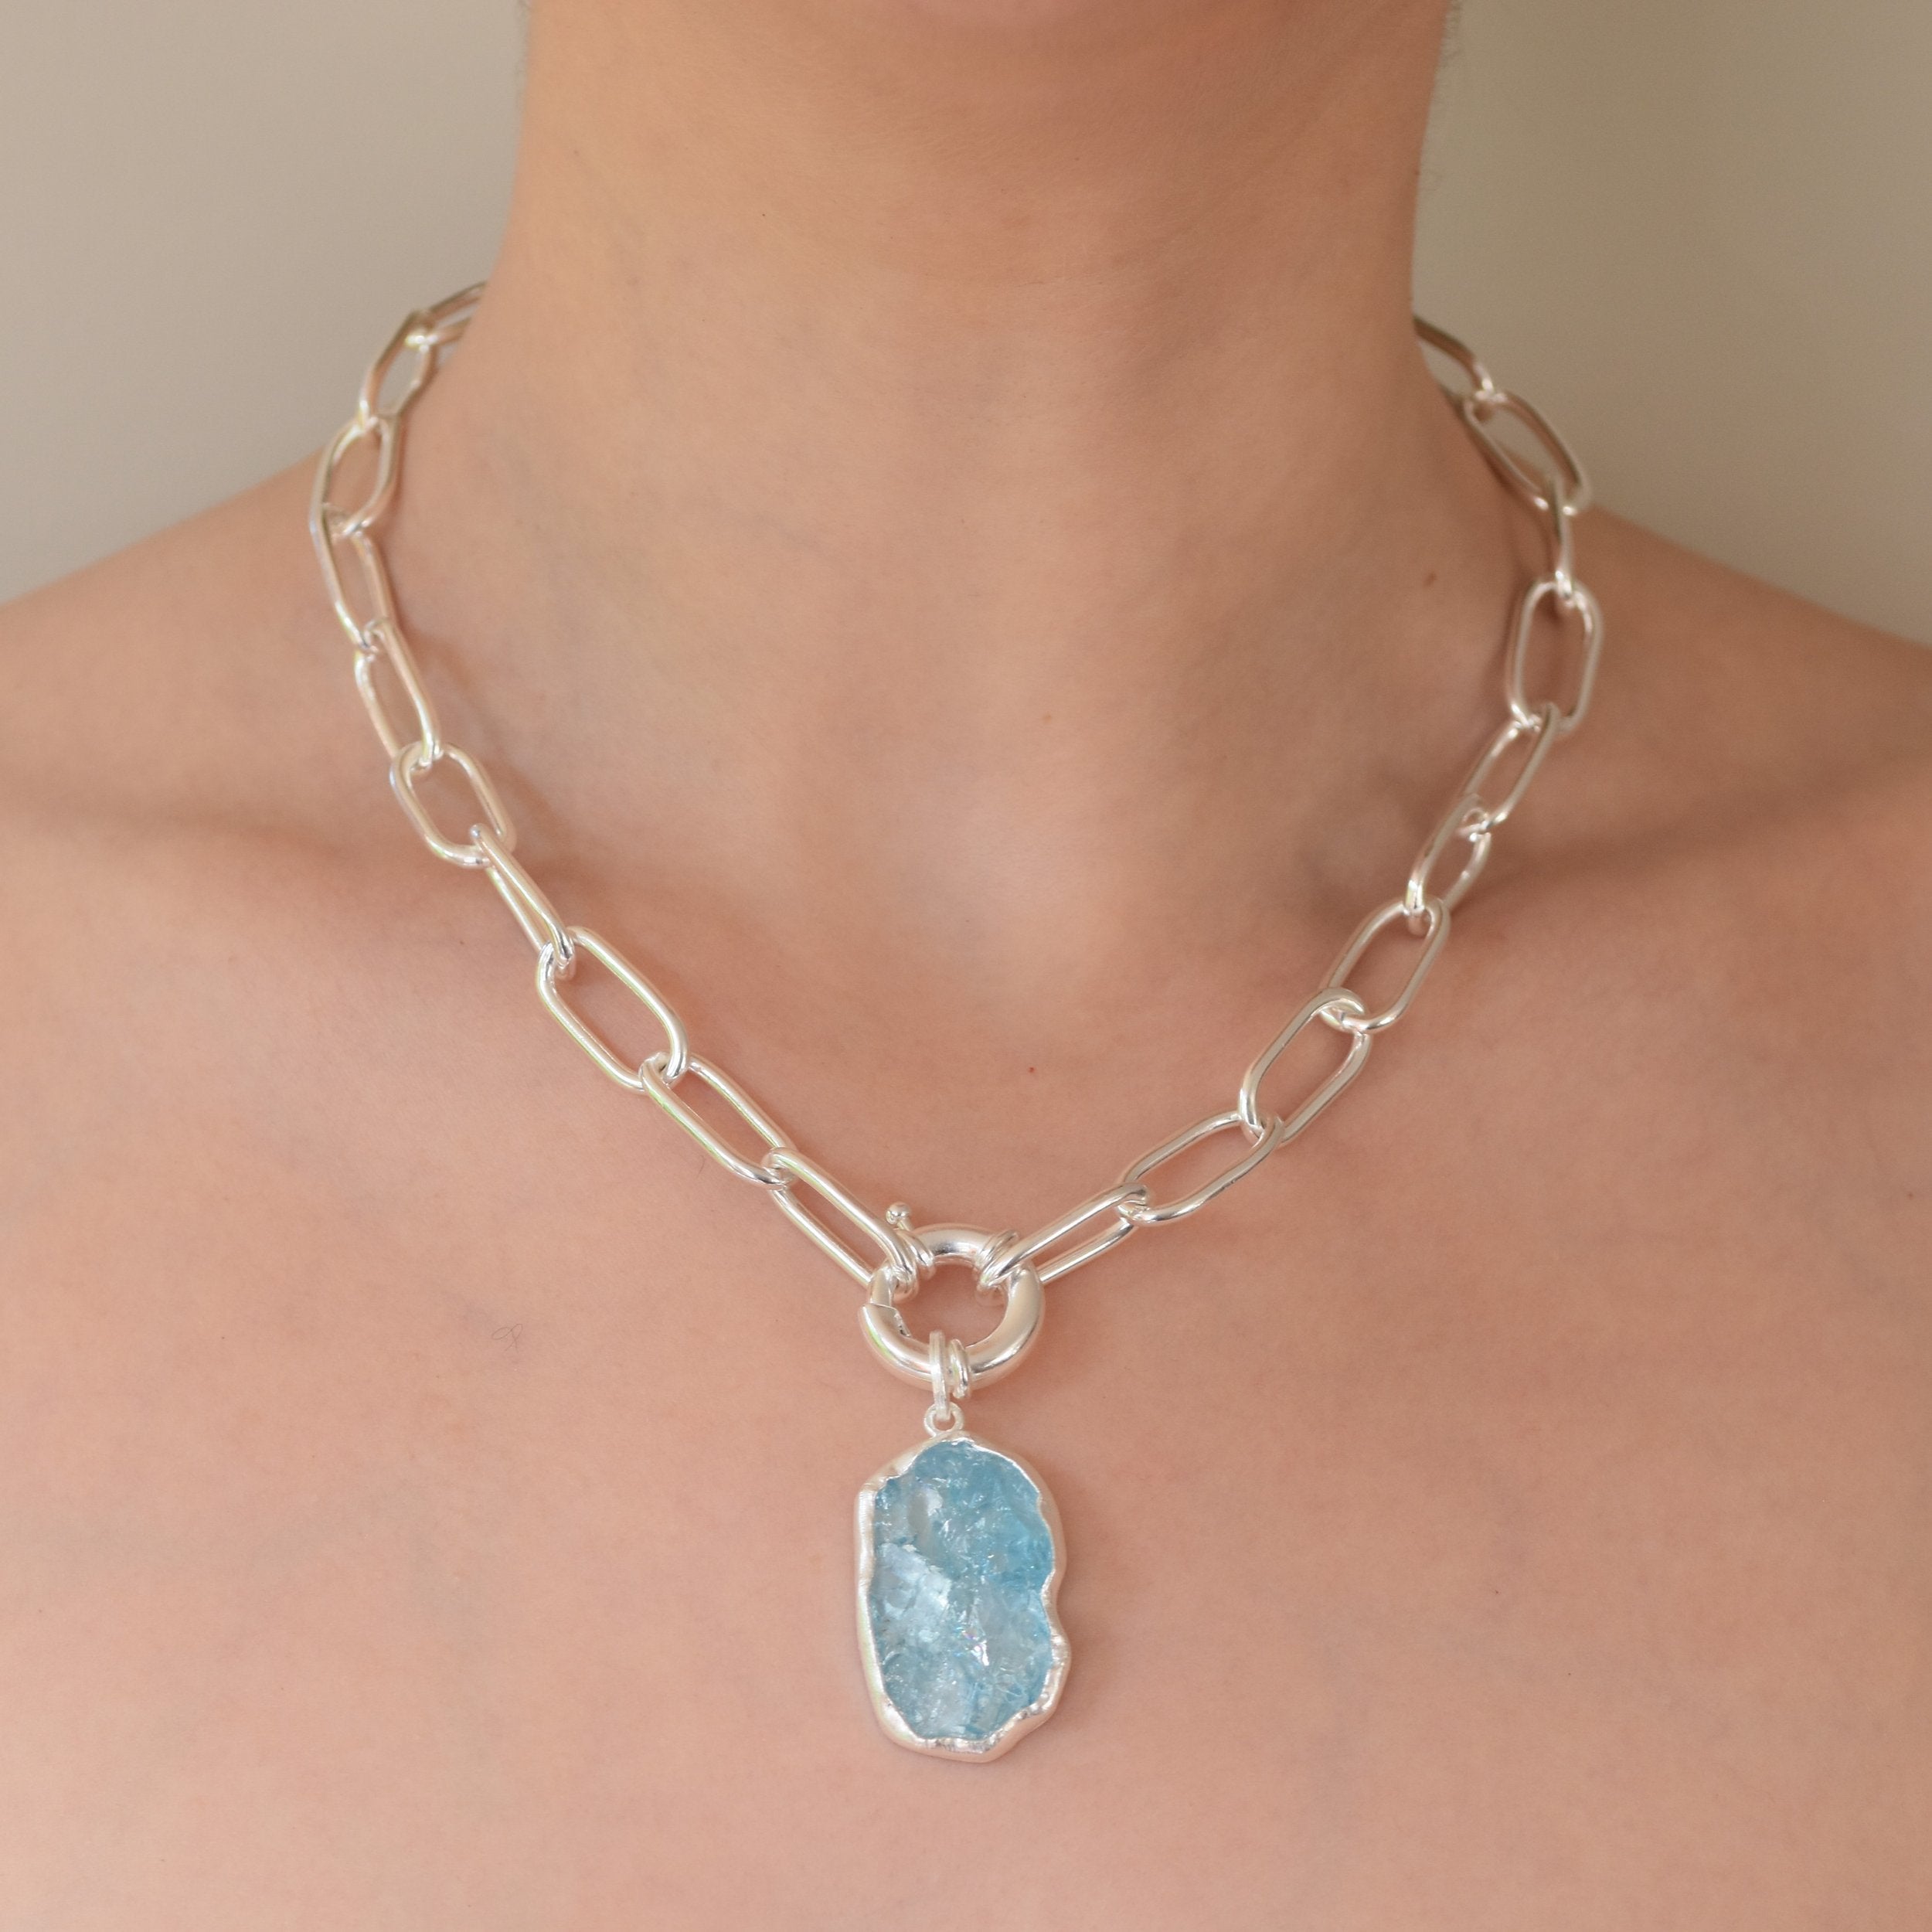 Aquamarine and Silver Pendant